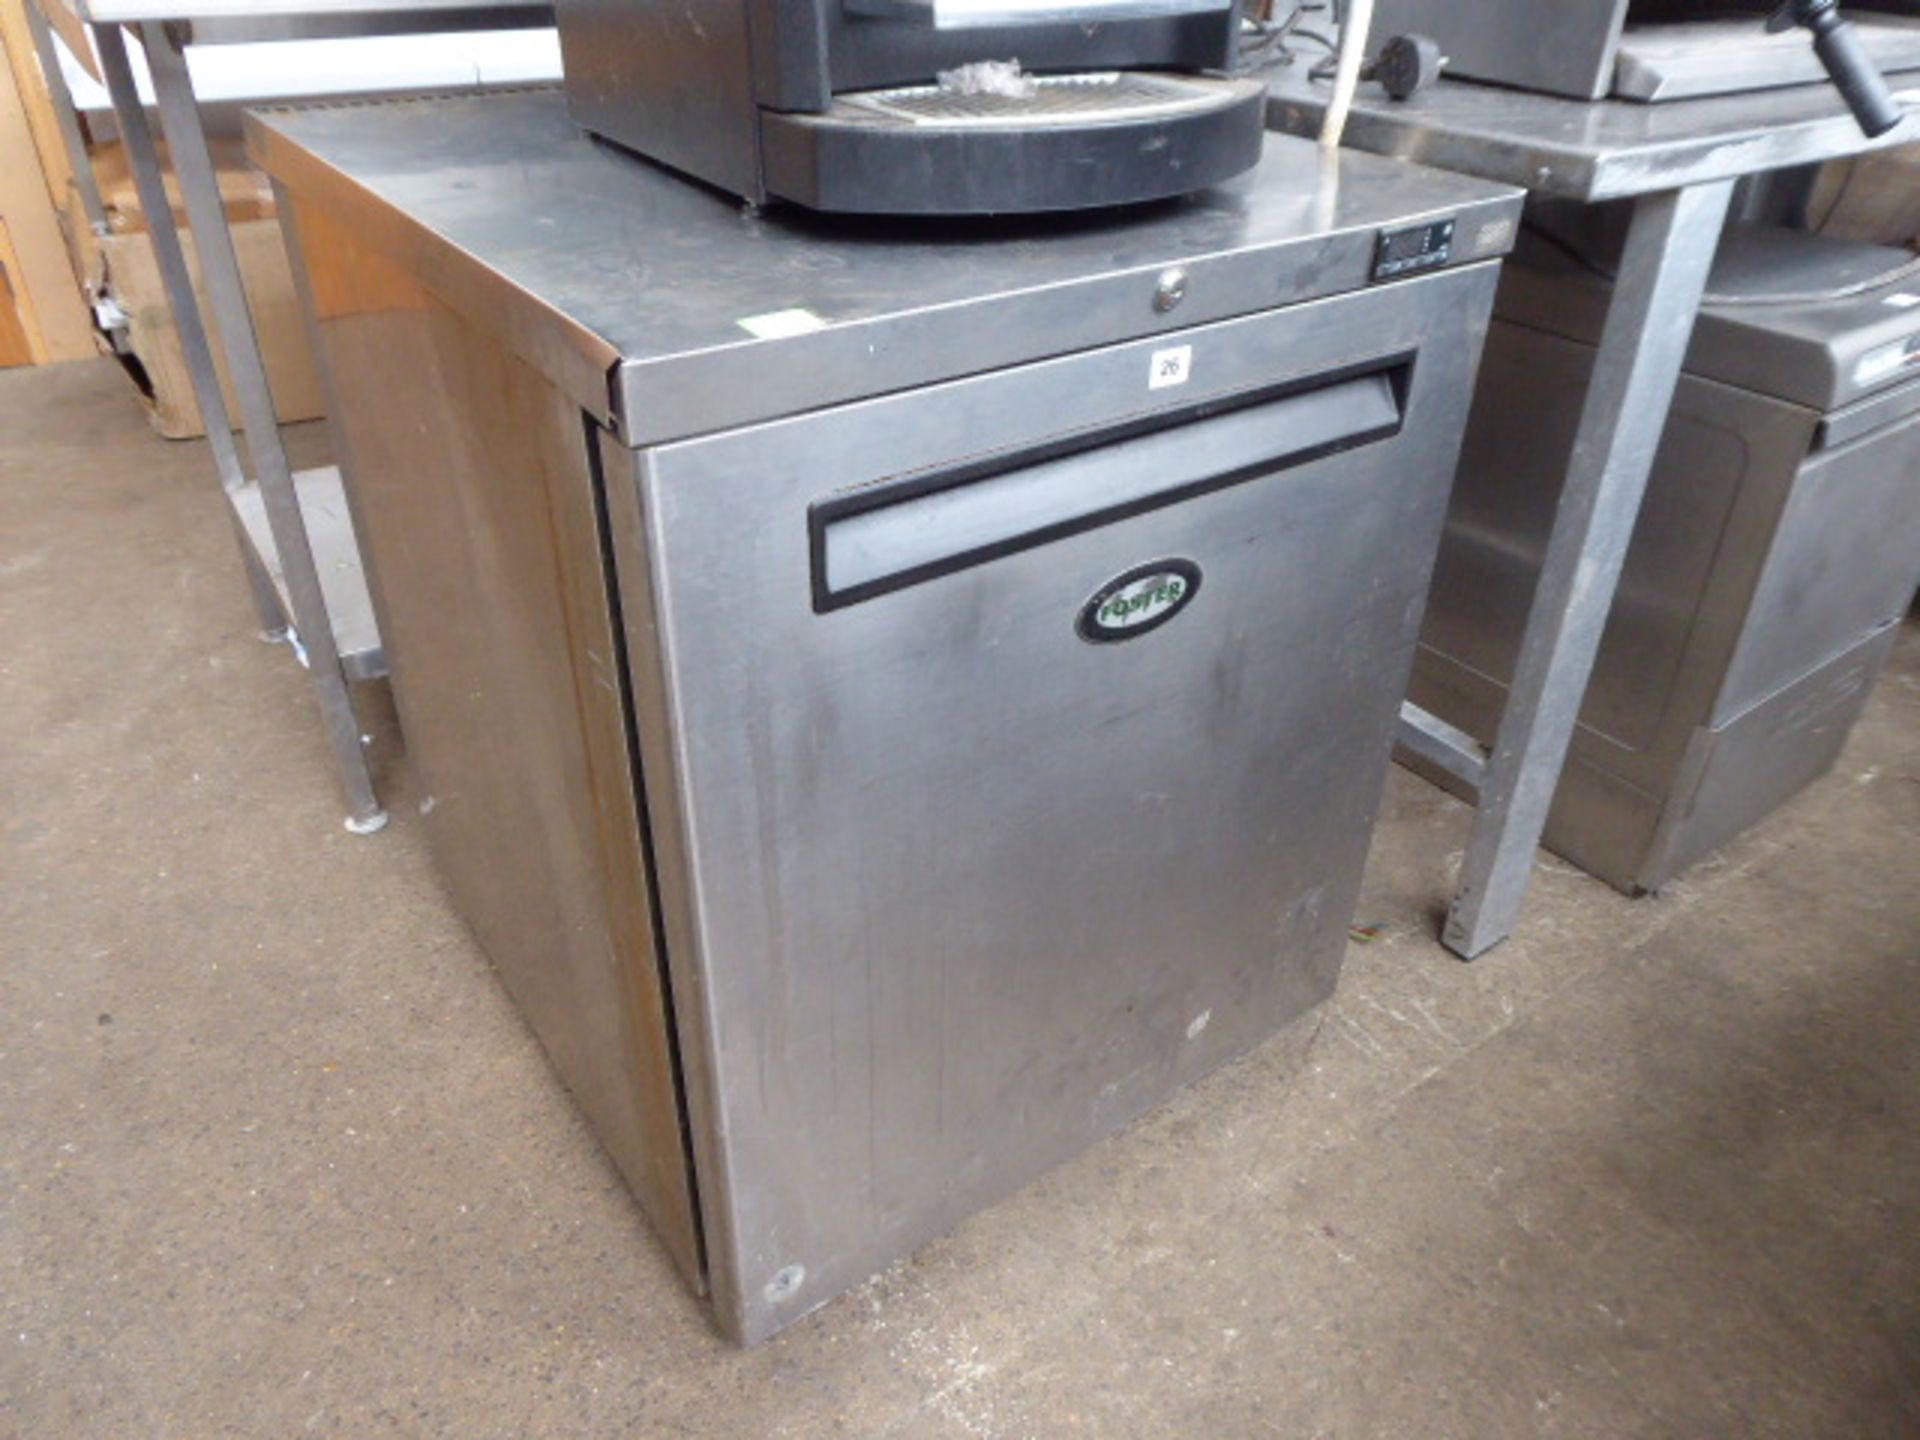 (38) 70cm Foster model LR200 under counter single door freezer